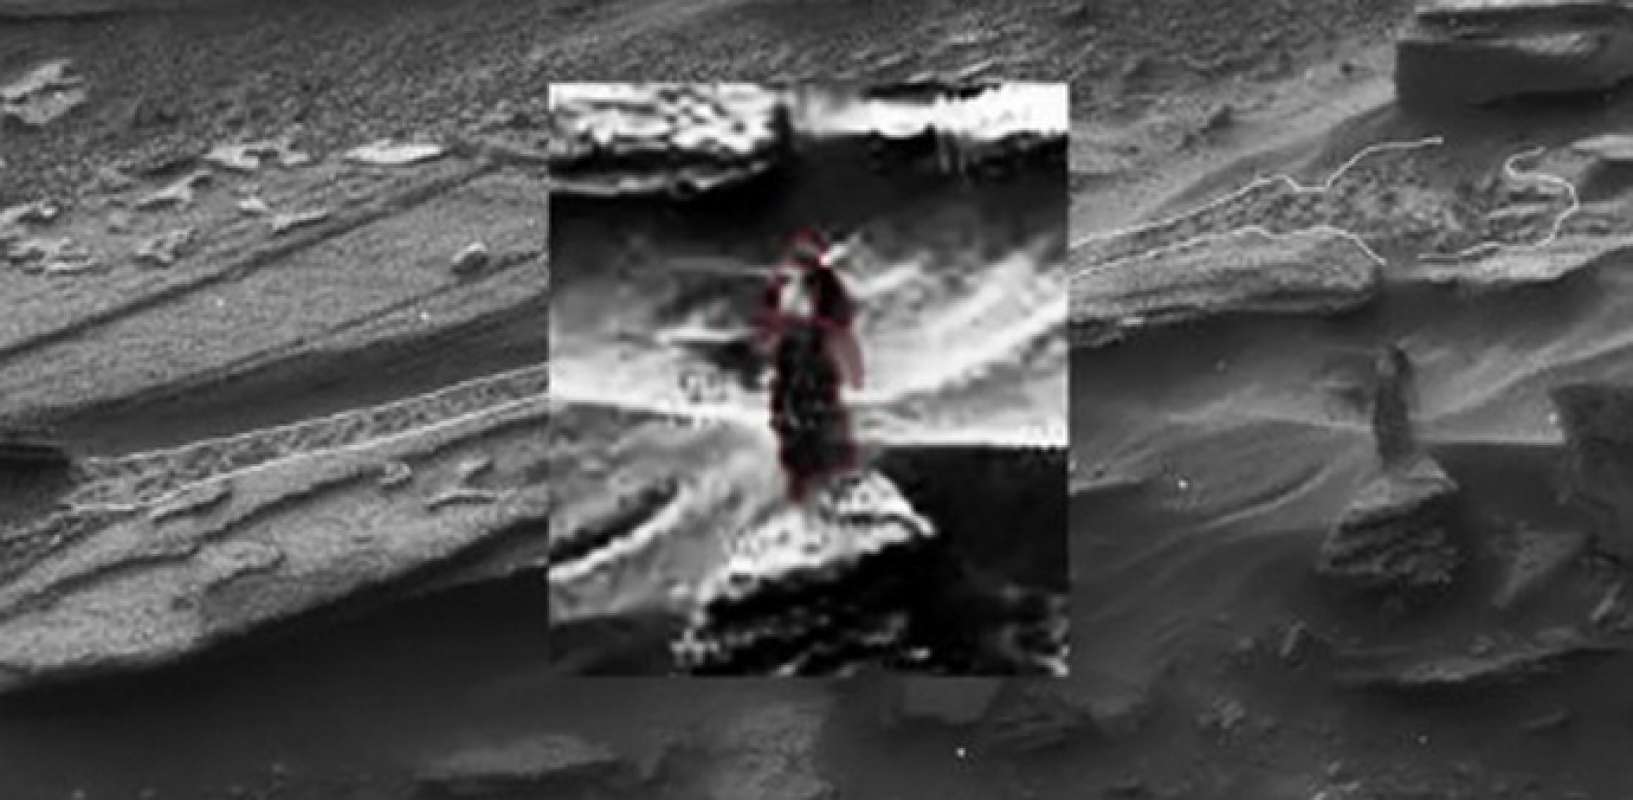 Не разгаданные чувства. Необъяснимые снимки с Марса. НЛО на Марсе. Артефакты на Марсе. Необъяснимые явления в космосе.